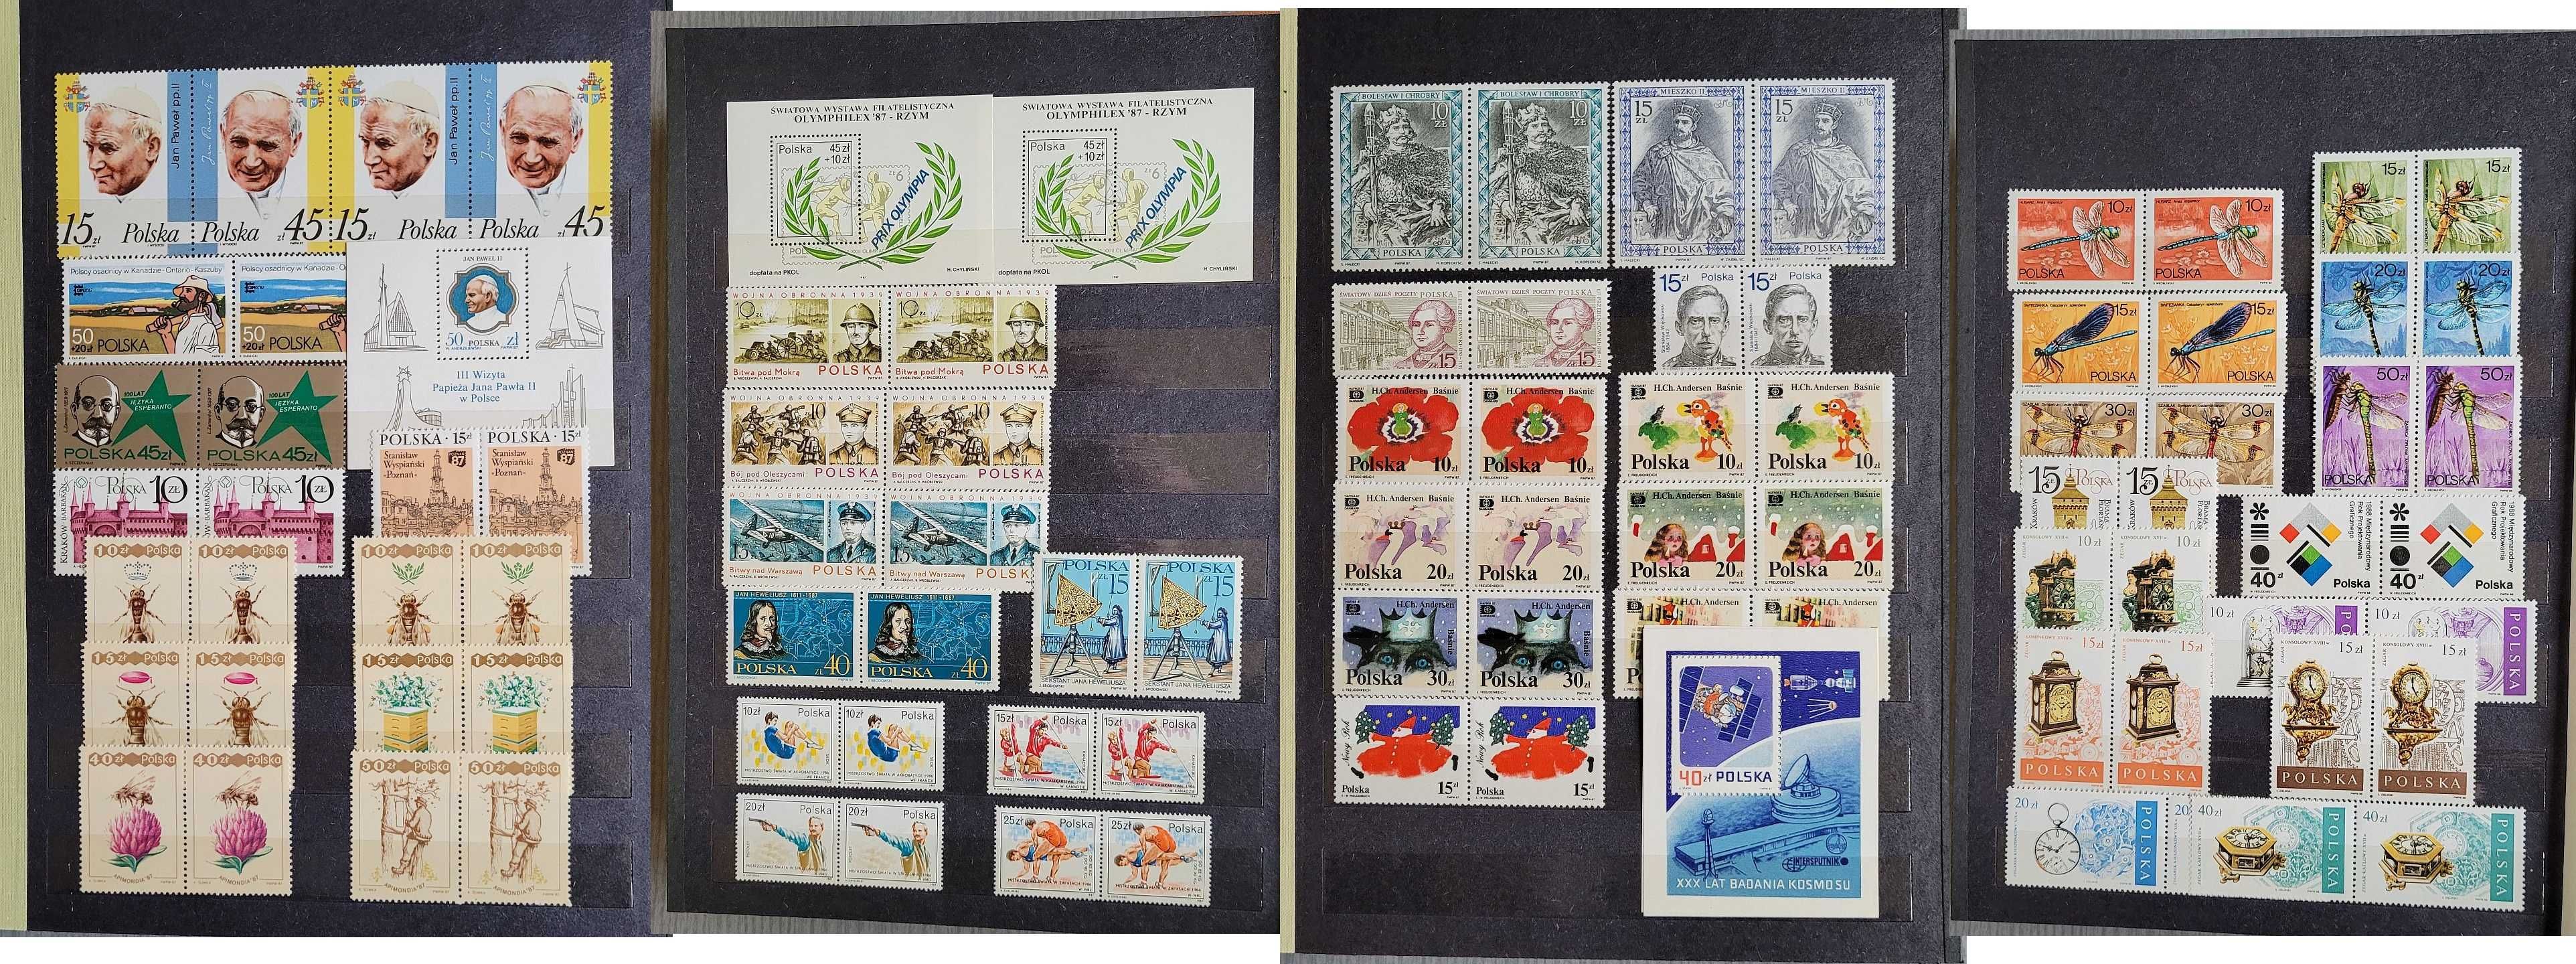 Znaczki pocztowe tzw. "parki" zestaw roczników od 1986 do 1991 klaser